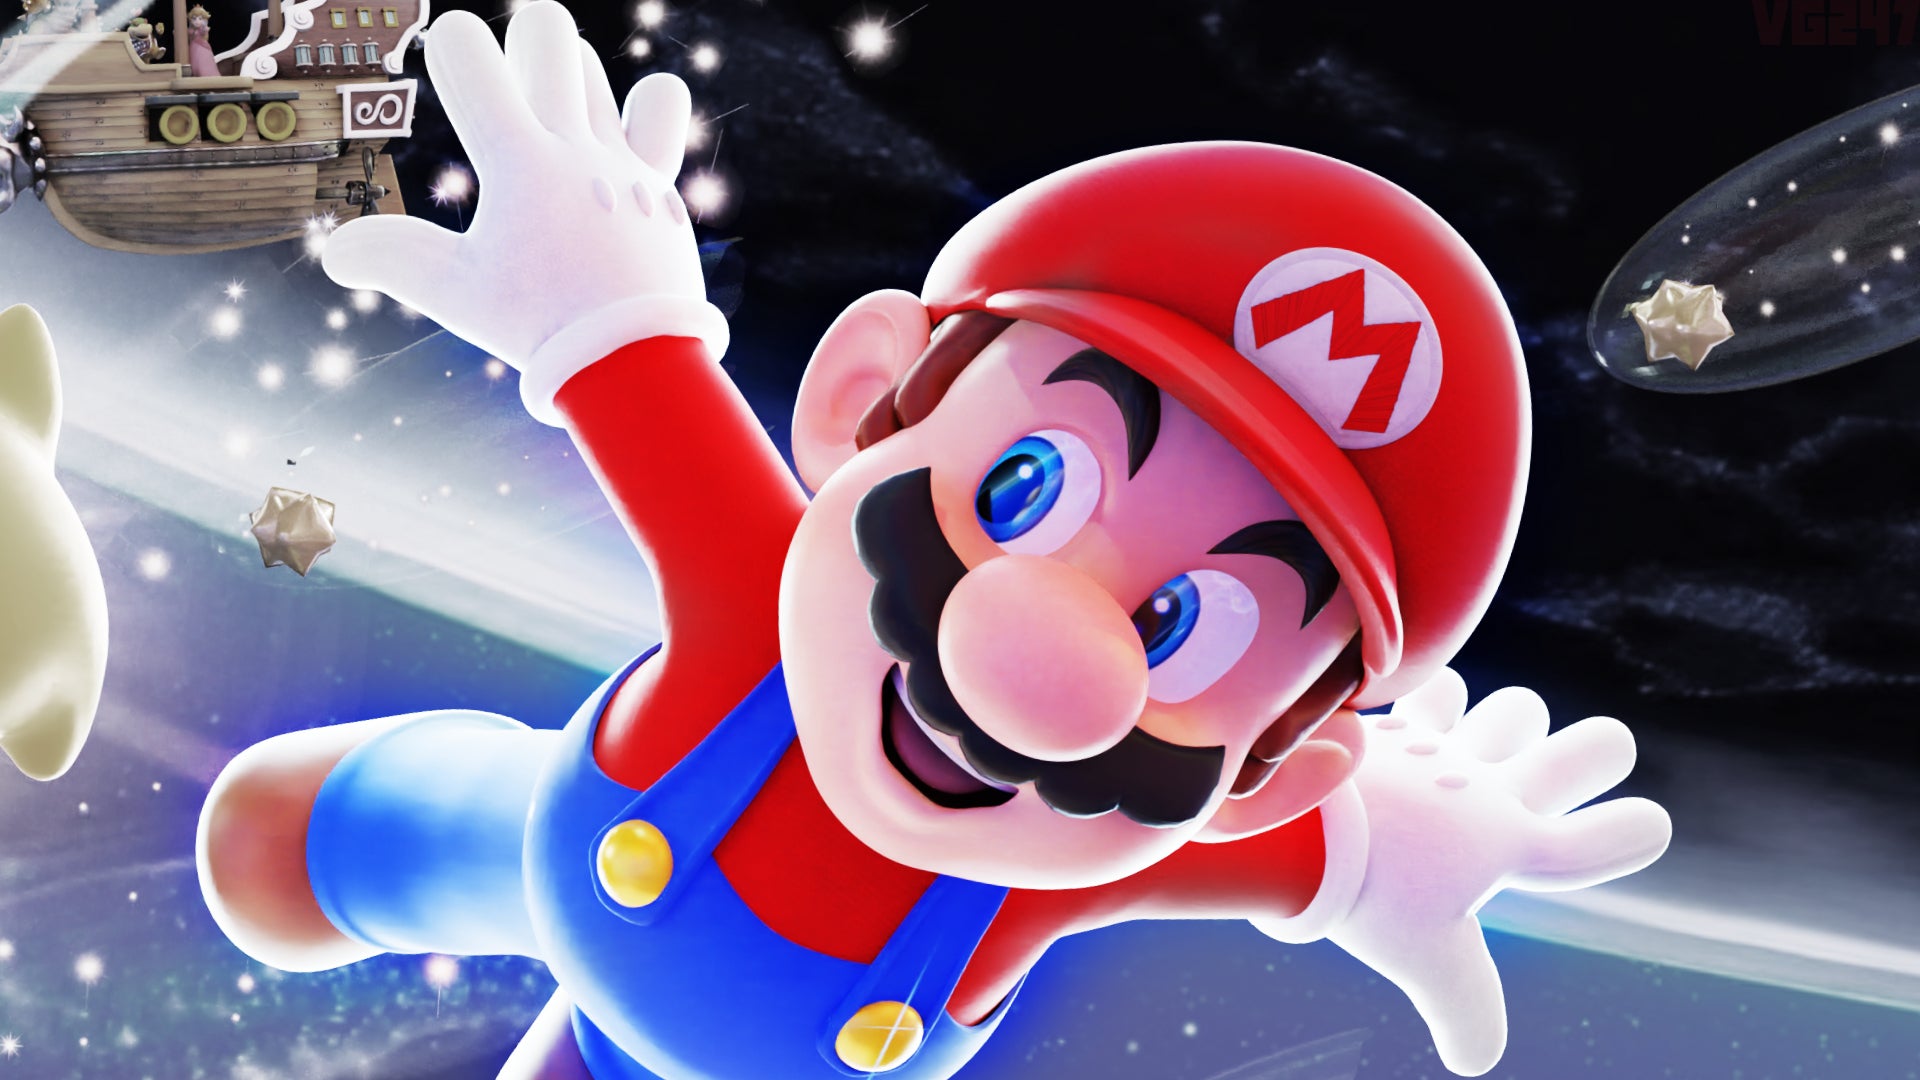 Super Mario Galaxy là một trong những phiên bản đặc biệt của trò chơi Mario. Với họa tiết đồ họa đẹp mắt và cốt truyện thú vị, hãy tham gia cùng Mario vào cuộc phiêu lưu đầy thử thách và khám phá những hành tinh xa lạ. Xem hình ảnh để tưởng tượng và cảm nhận đầy đủ vẻ đẹp của trò chơi Mario.